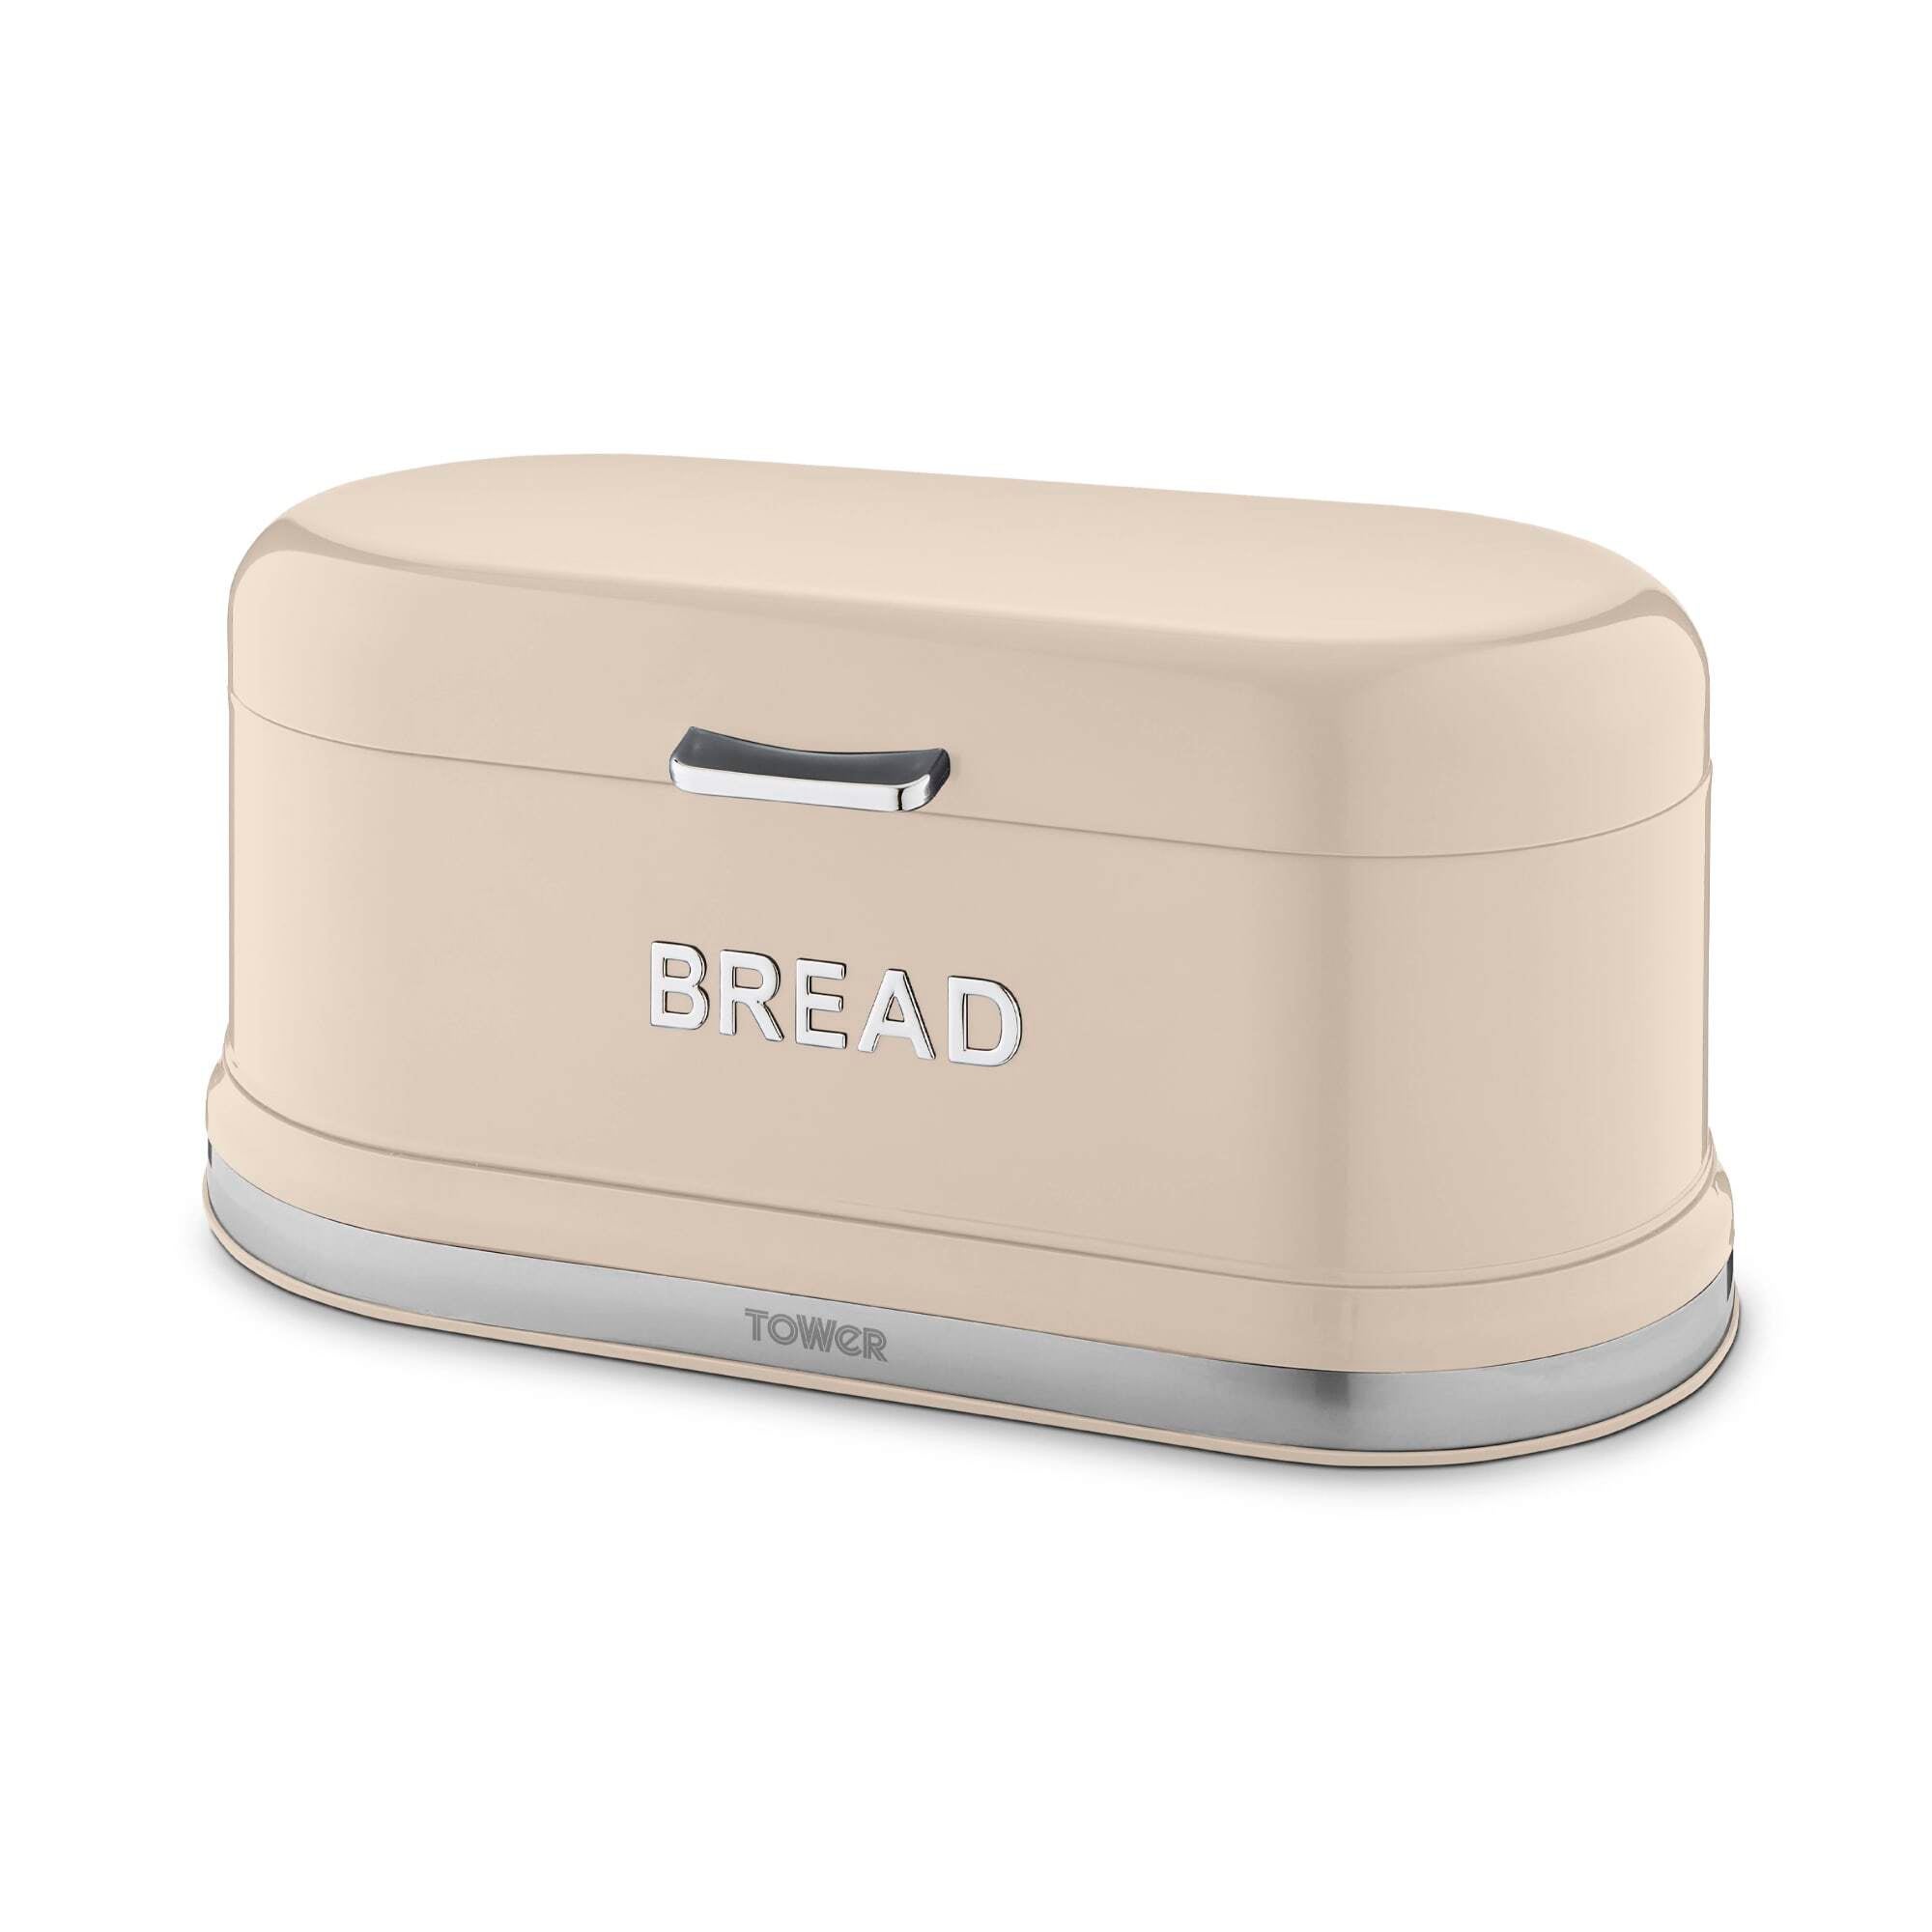 Tower Belle Bread Bin